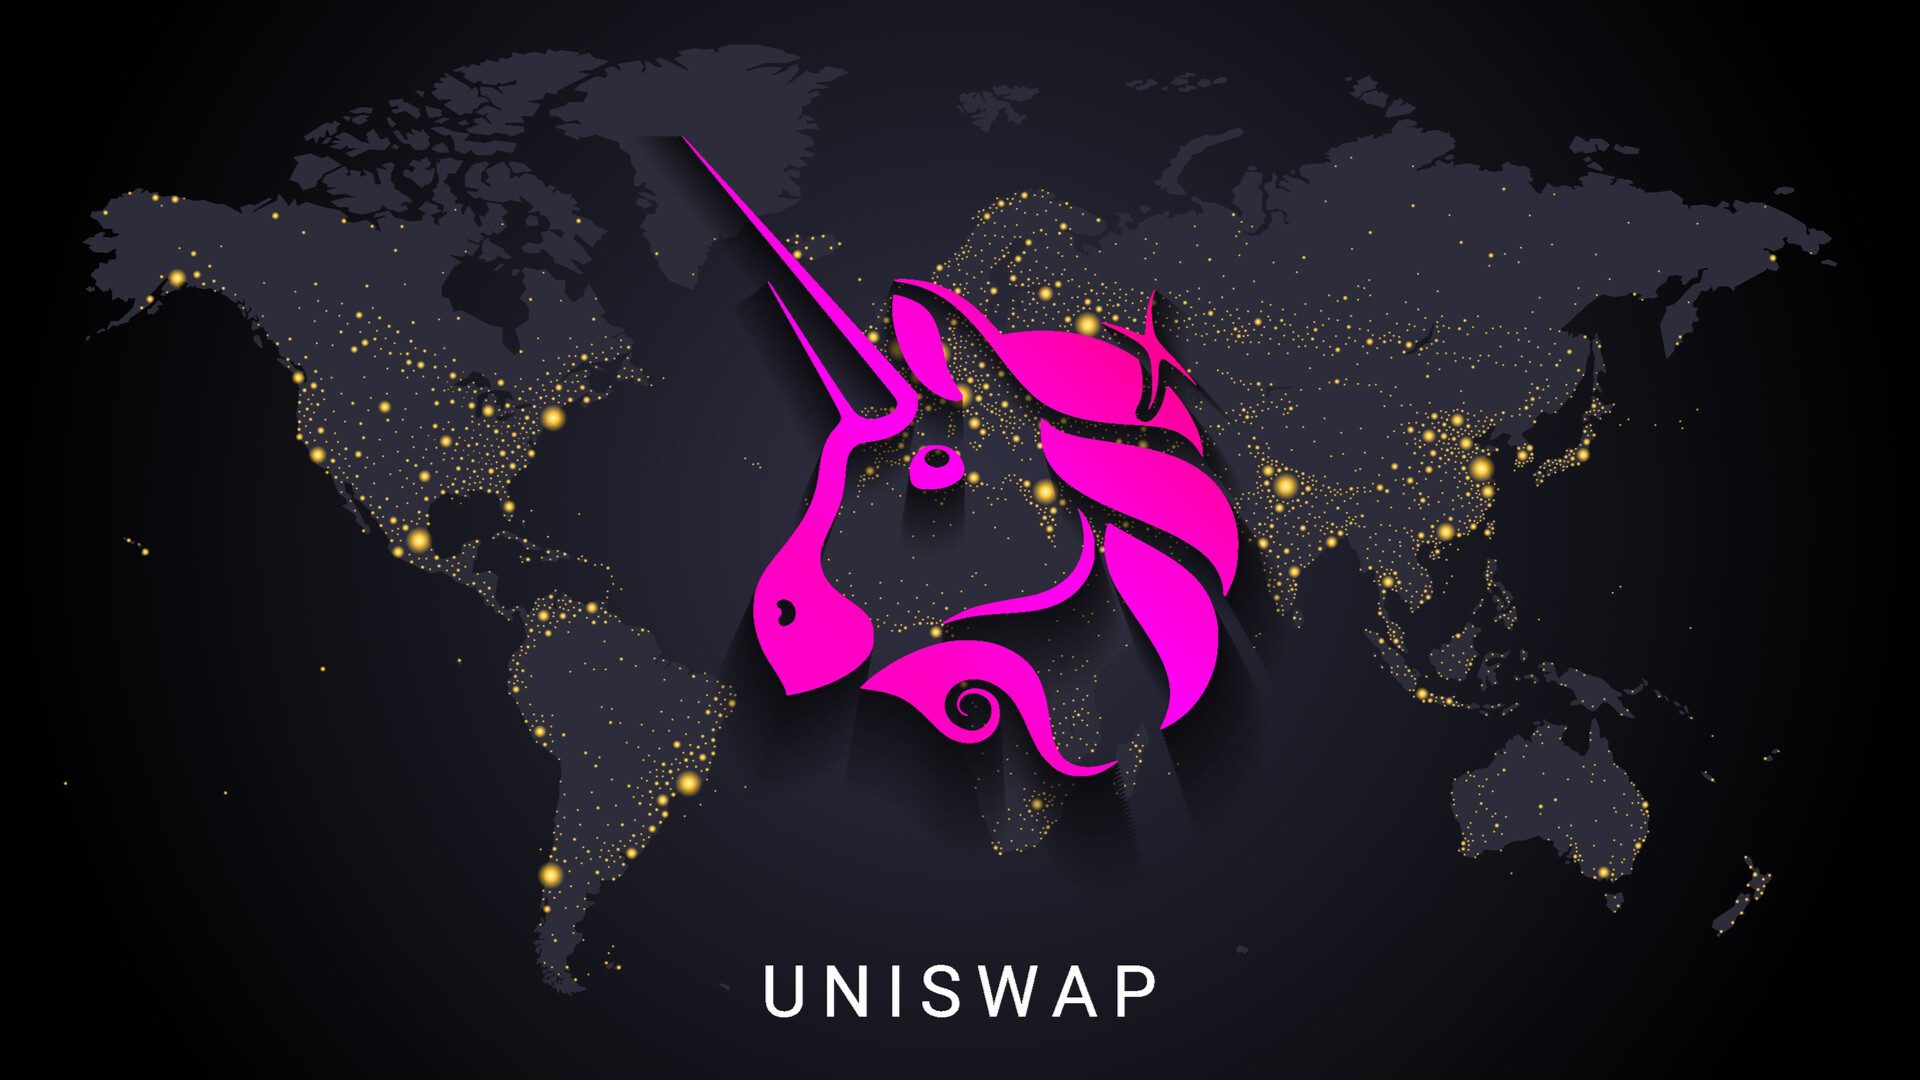 simbolo da uniswap em mapa mundial